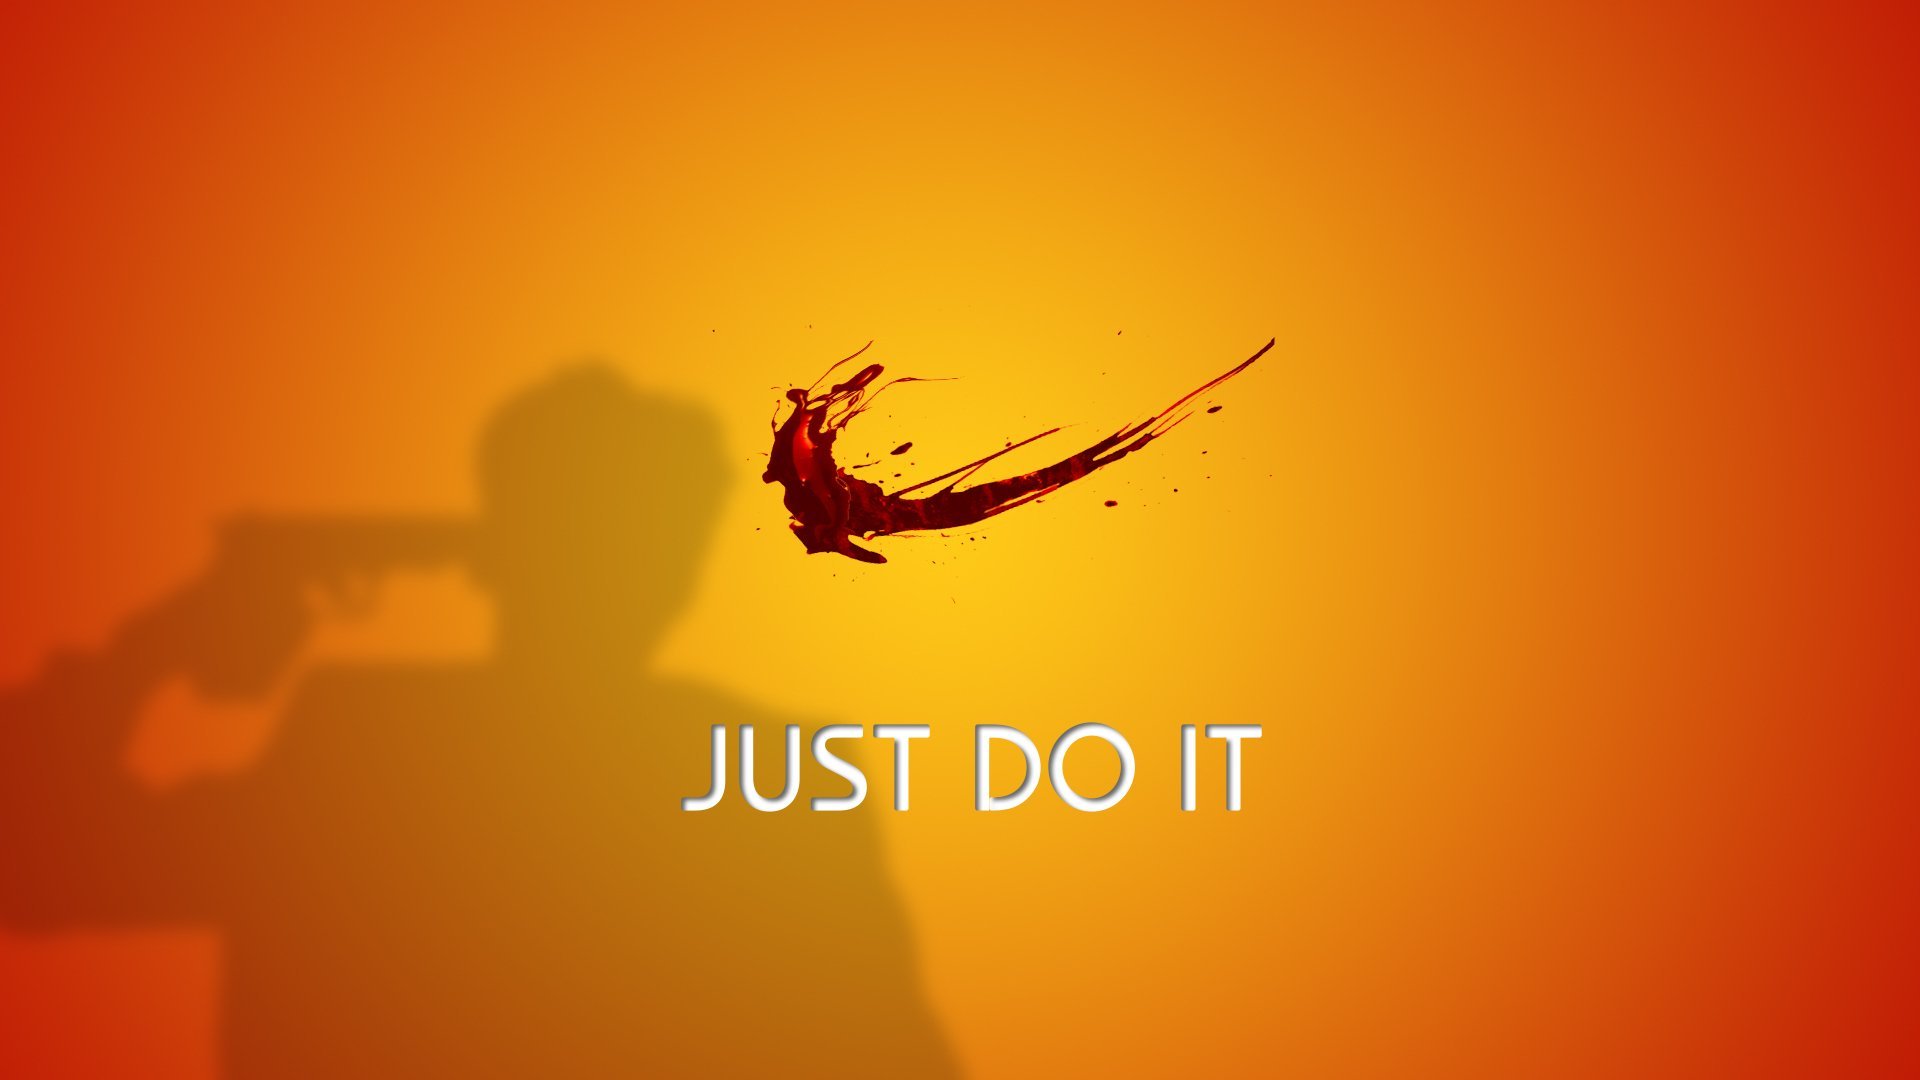 Nike Splash Just Do It Beauty Blood - Nike Suicide , HD Wallpaper & Backgrounds